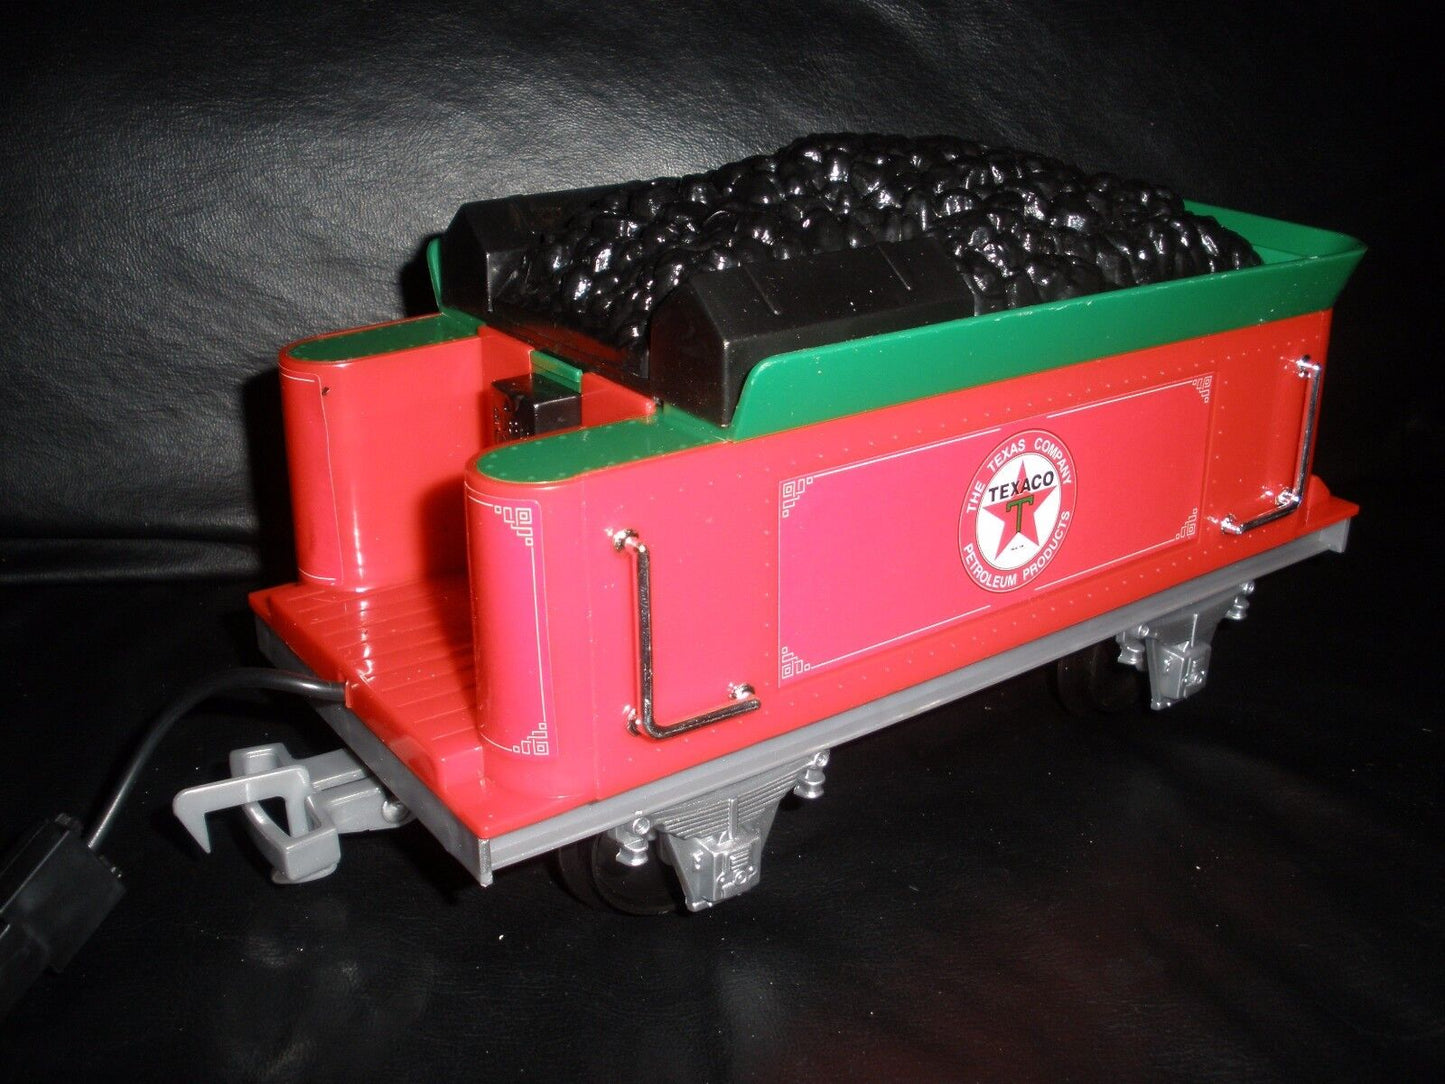 Texaco Christmas Tree 2-6-0 Steam Train Set & Tracks